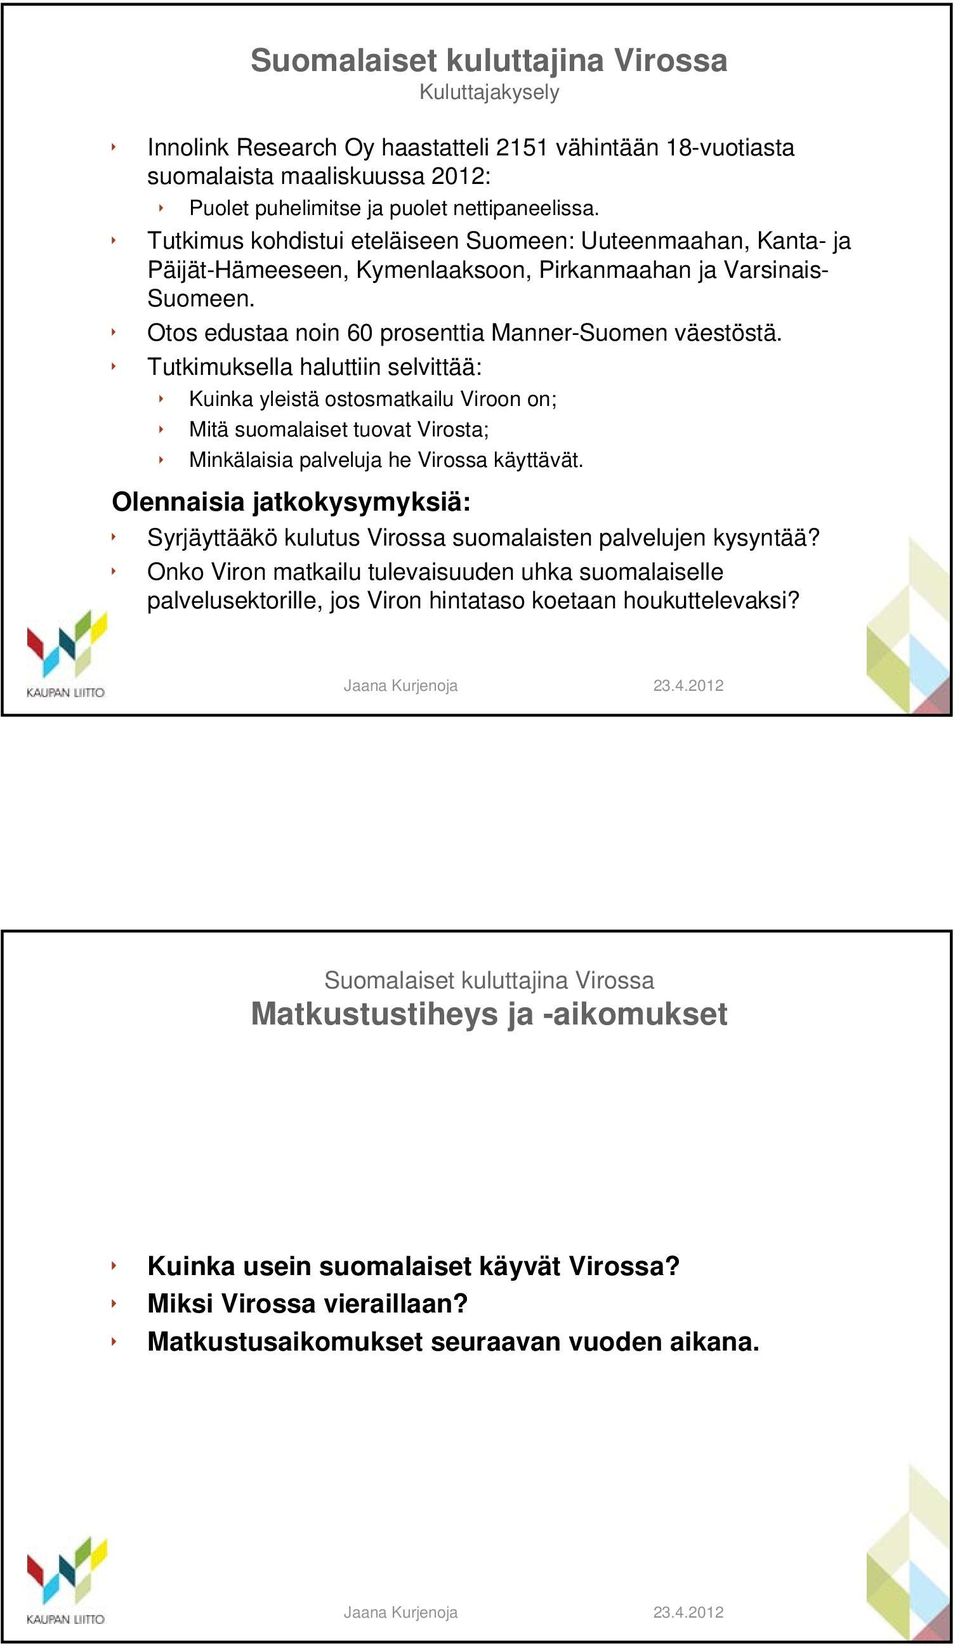 Tutkimuksella haluttiin selvittää: Kuinka yleistä ostosmatkailu Viroon on; Mitä suomalaiset tuovat Virosta; Minkälaisia palveluja he Virossa käyttävät.